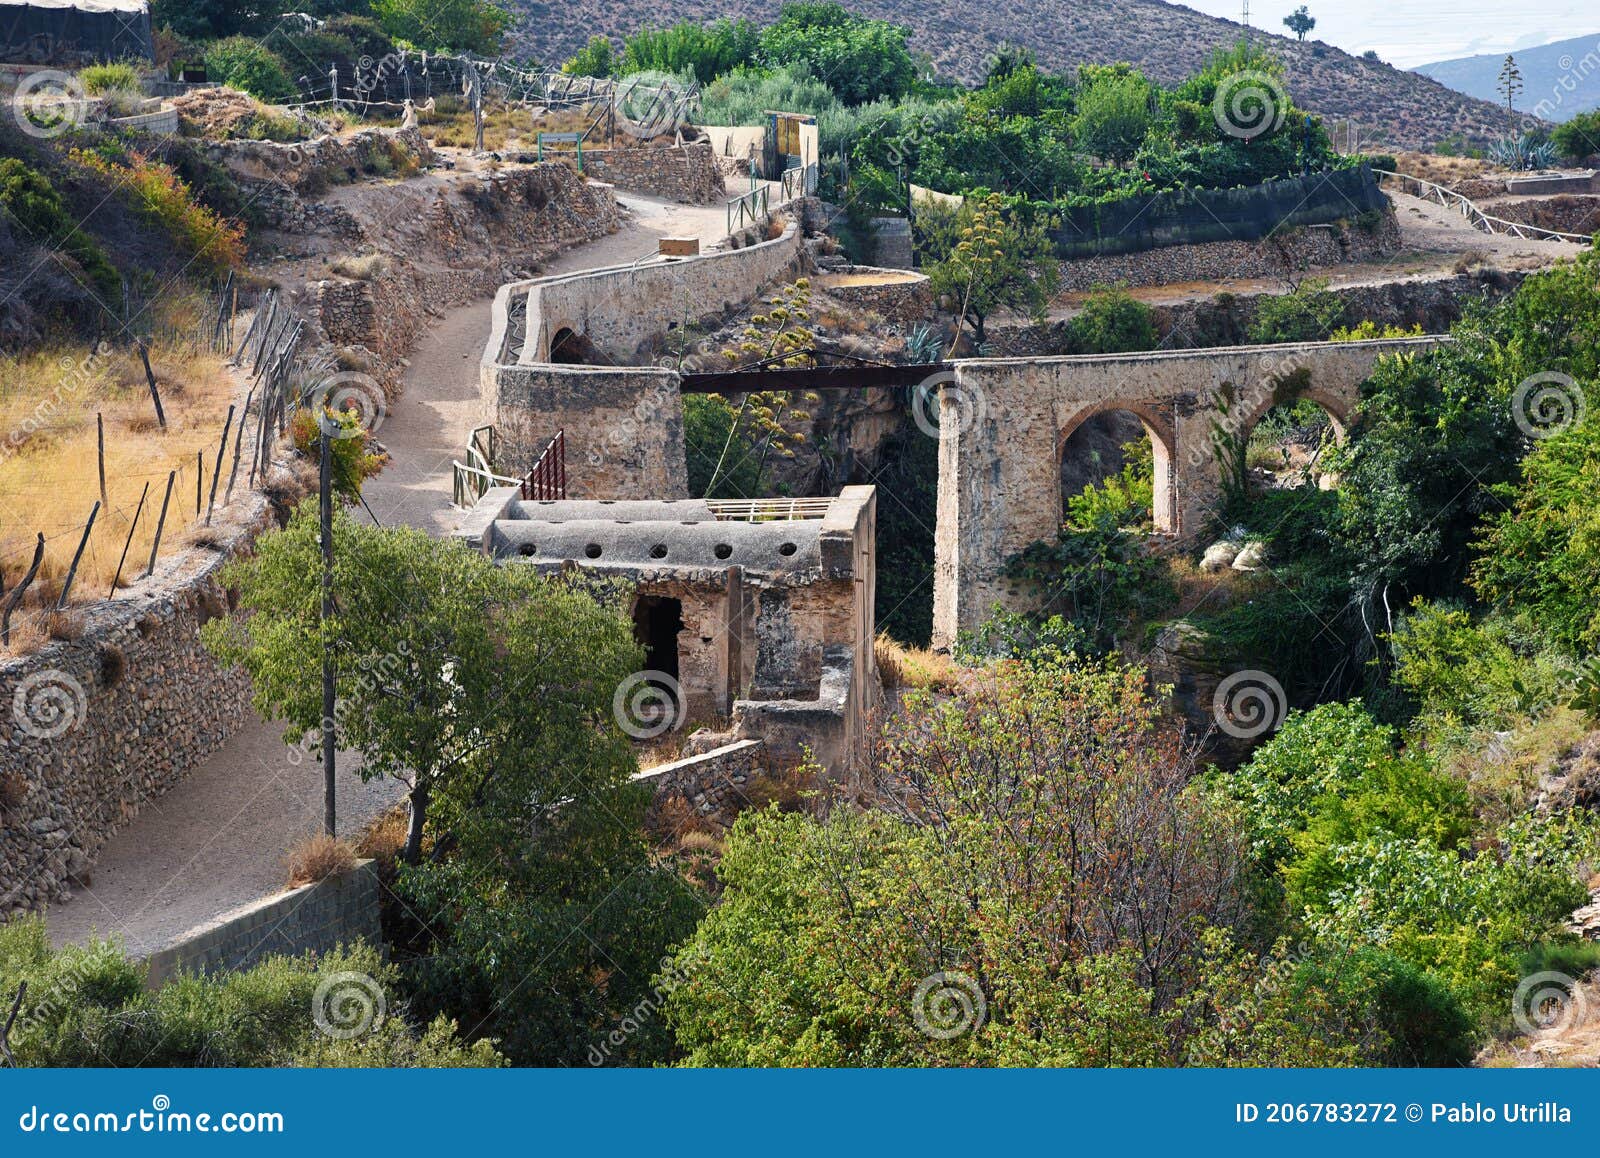 remains of arab baths and aqueduct, alpujarra